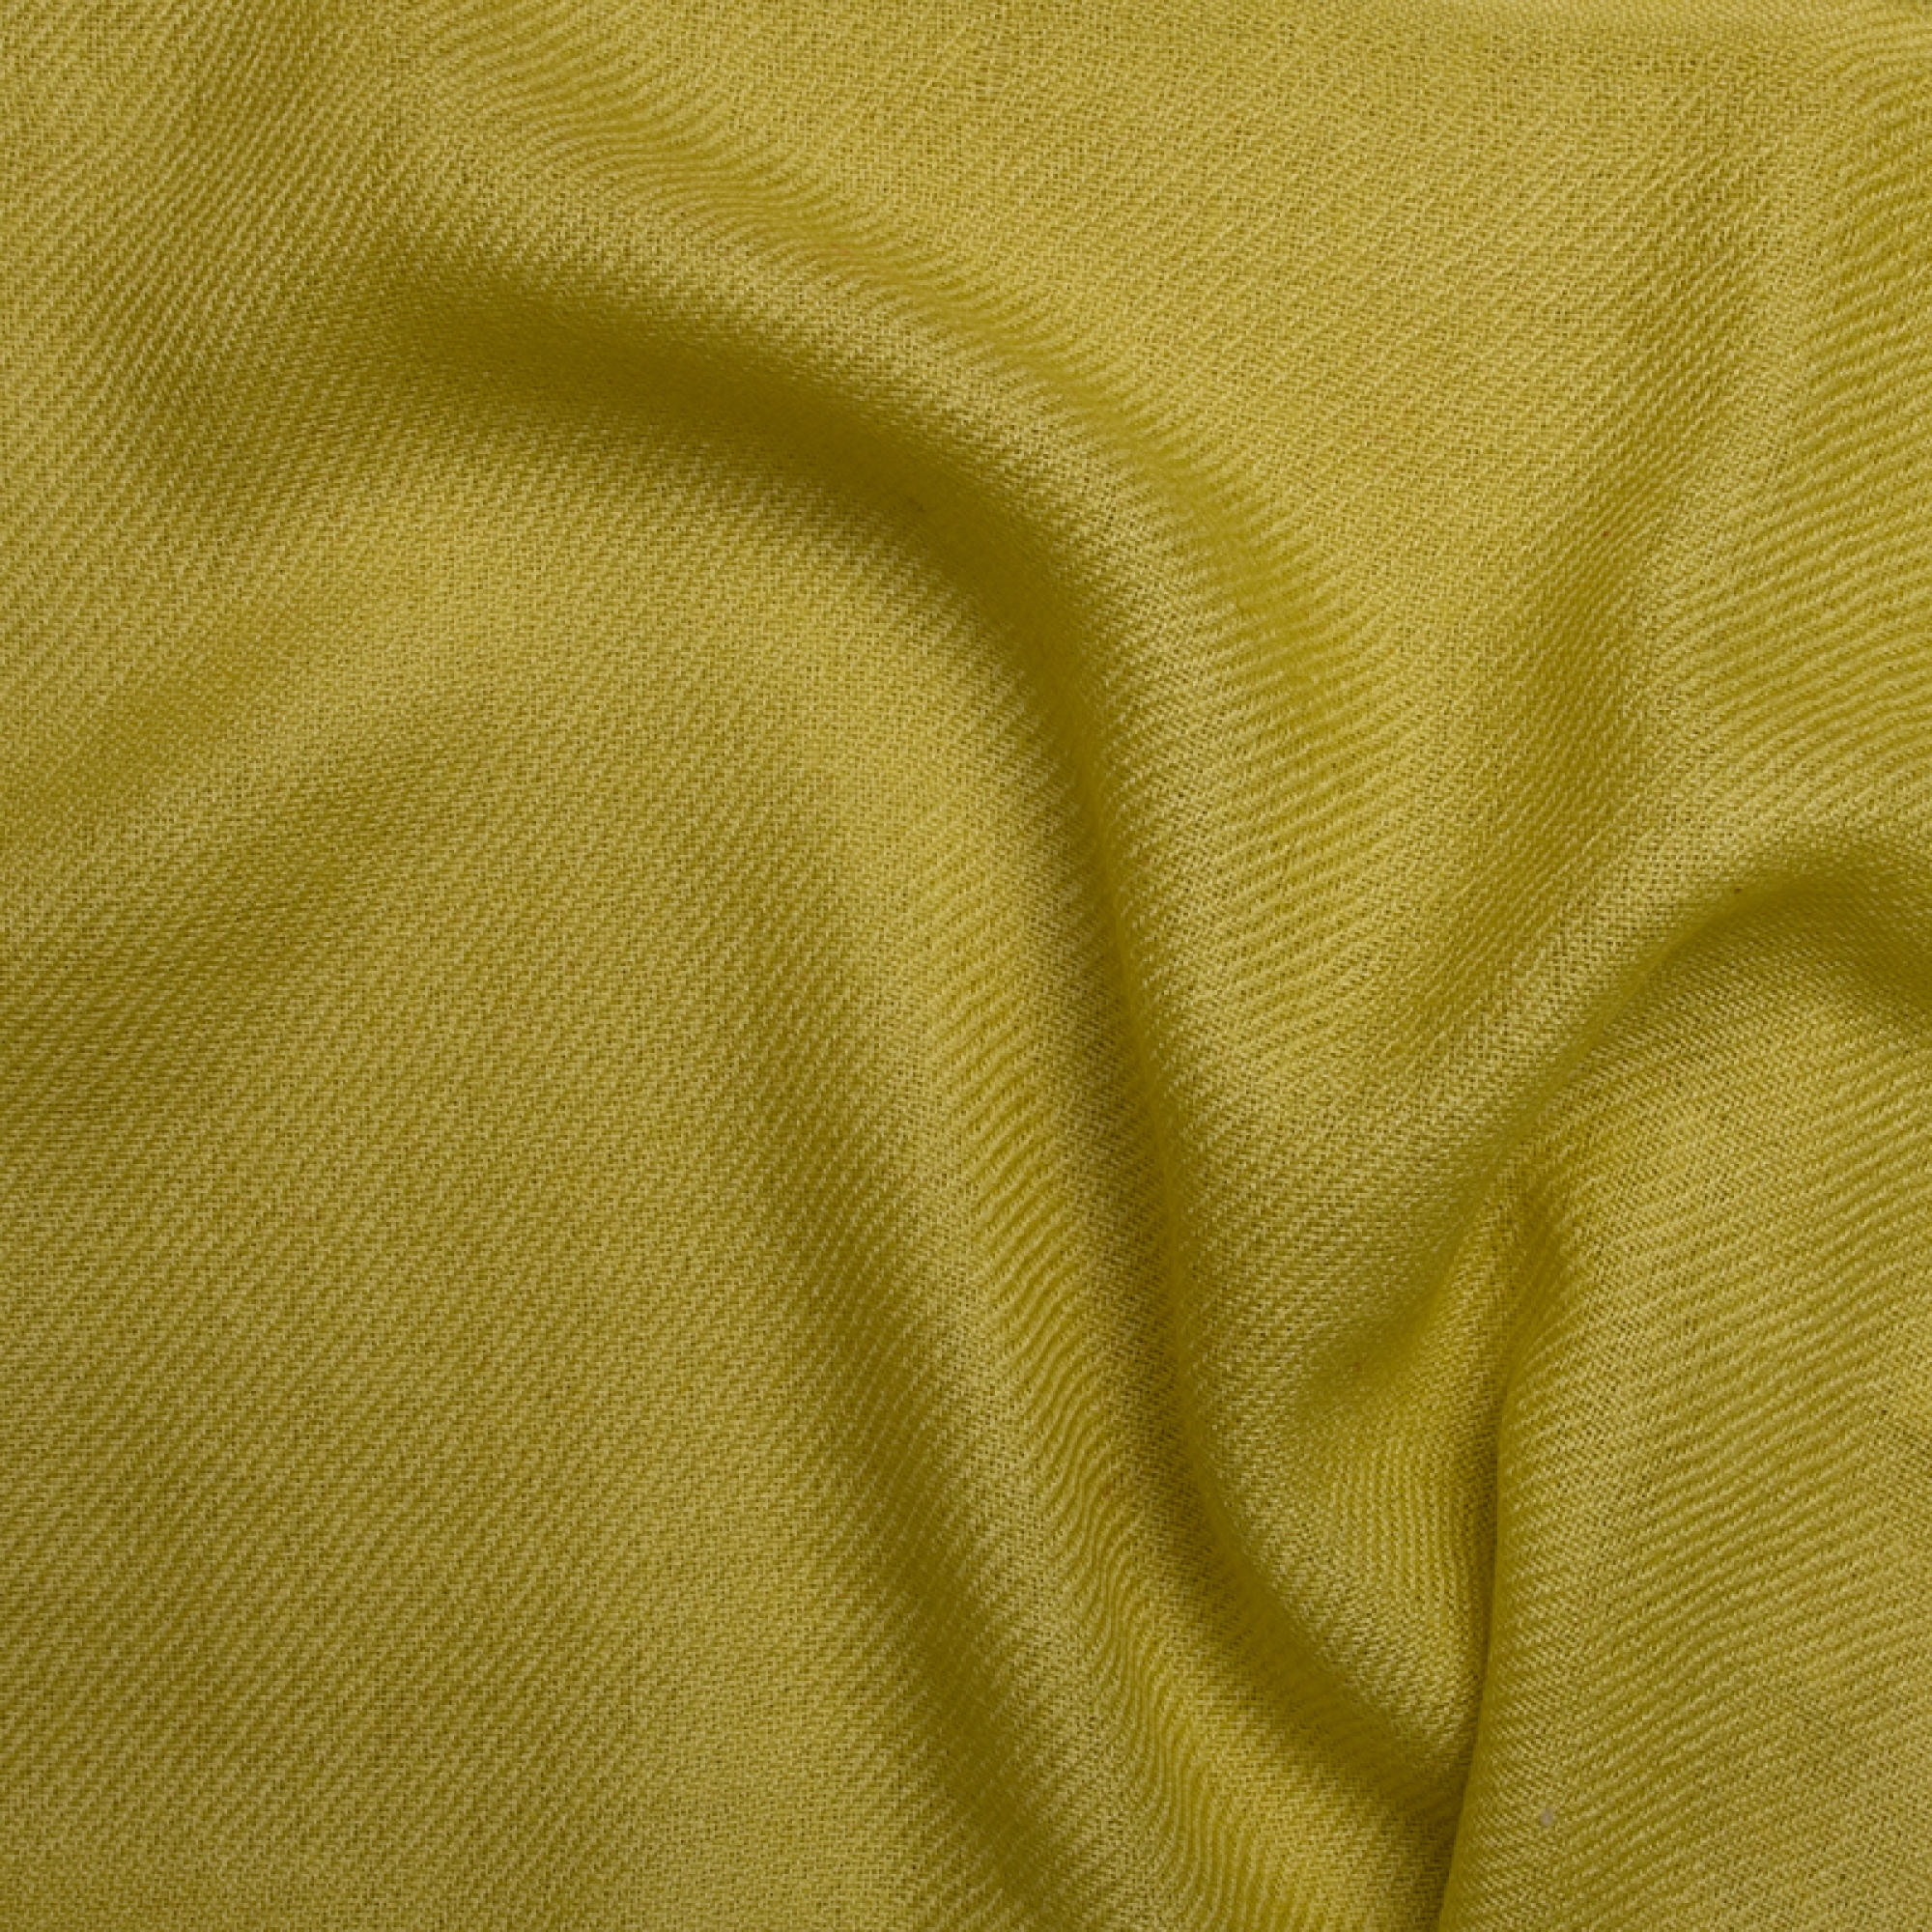 Cachemire accessoires couvertures plaids toodoo plain m 180 x 220 vert chantant 180 x 220 cm